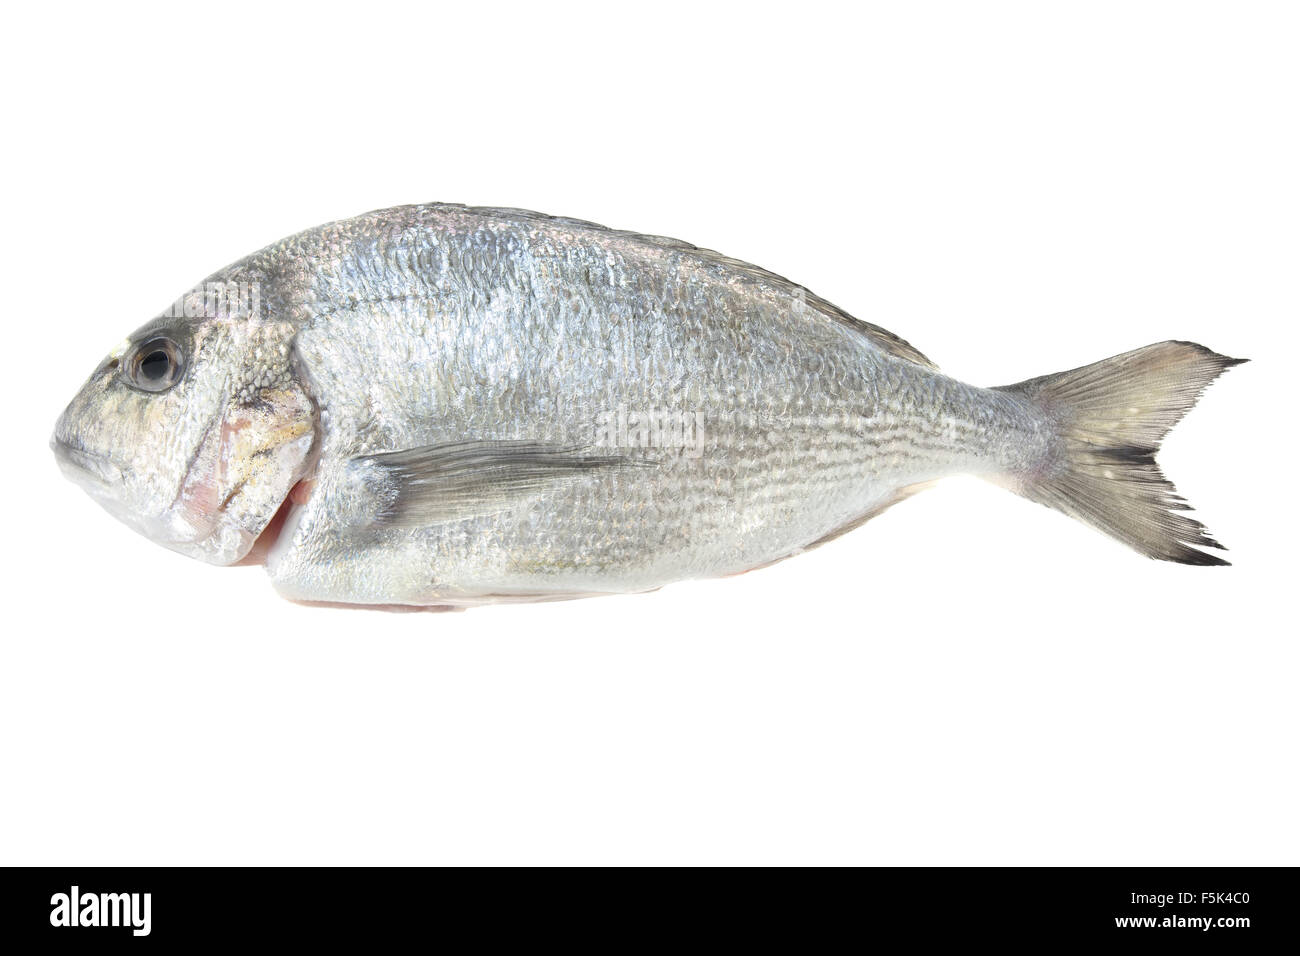 Dorada Meeresfrüchte isoliert auf weißem Hintergrund. Auch bekannt als Brassen Seefisch. Rohkost. Stockfoto